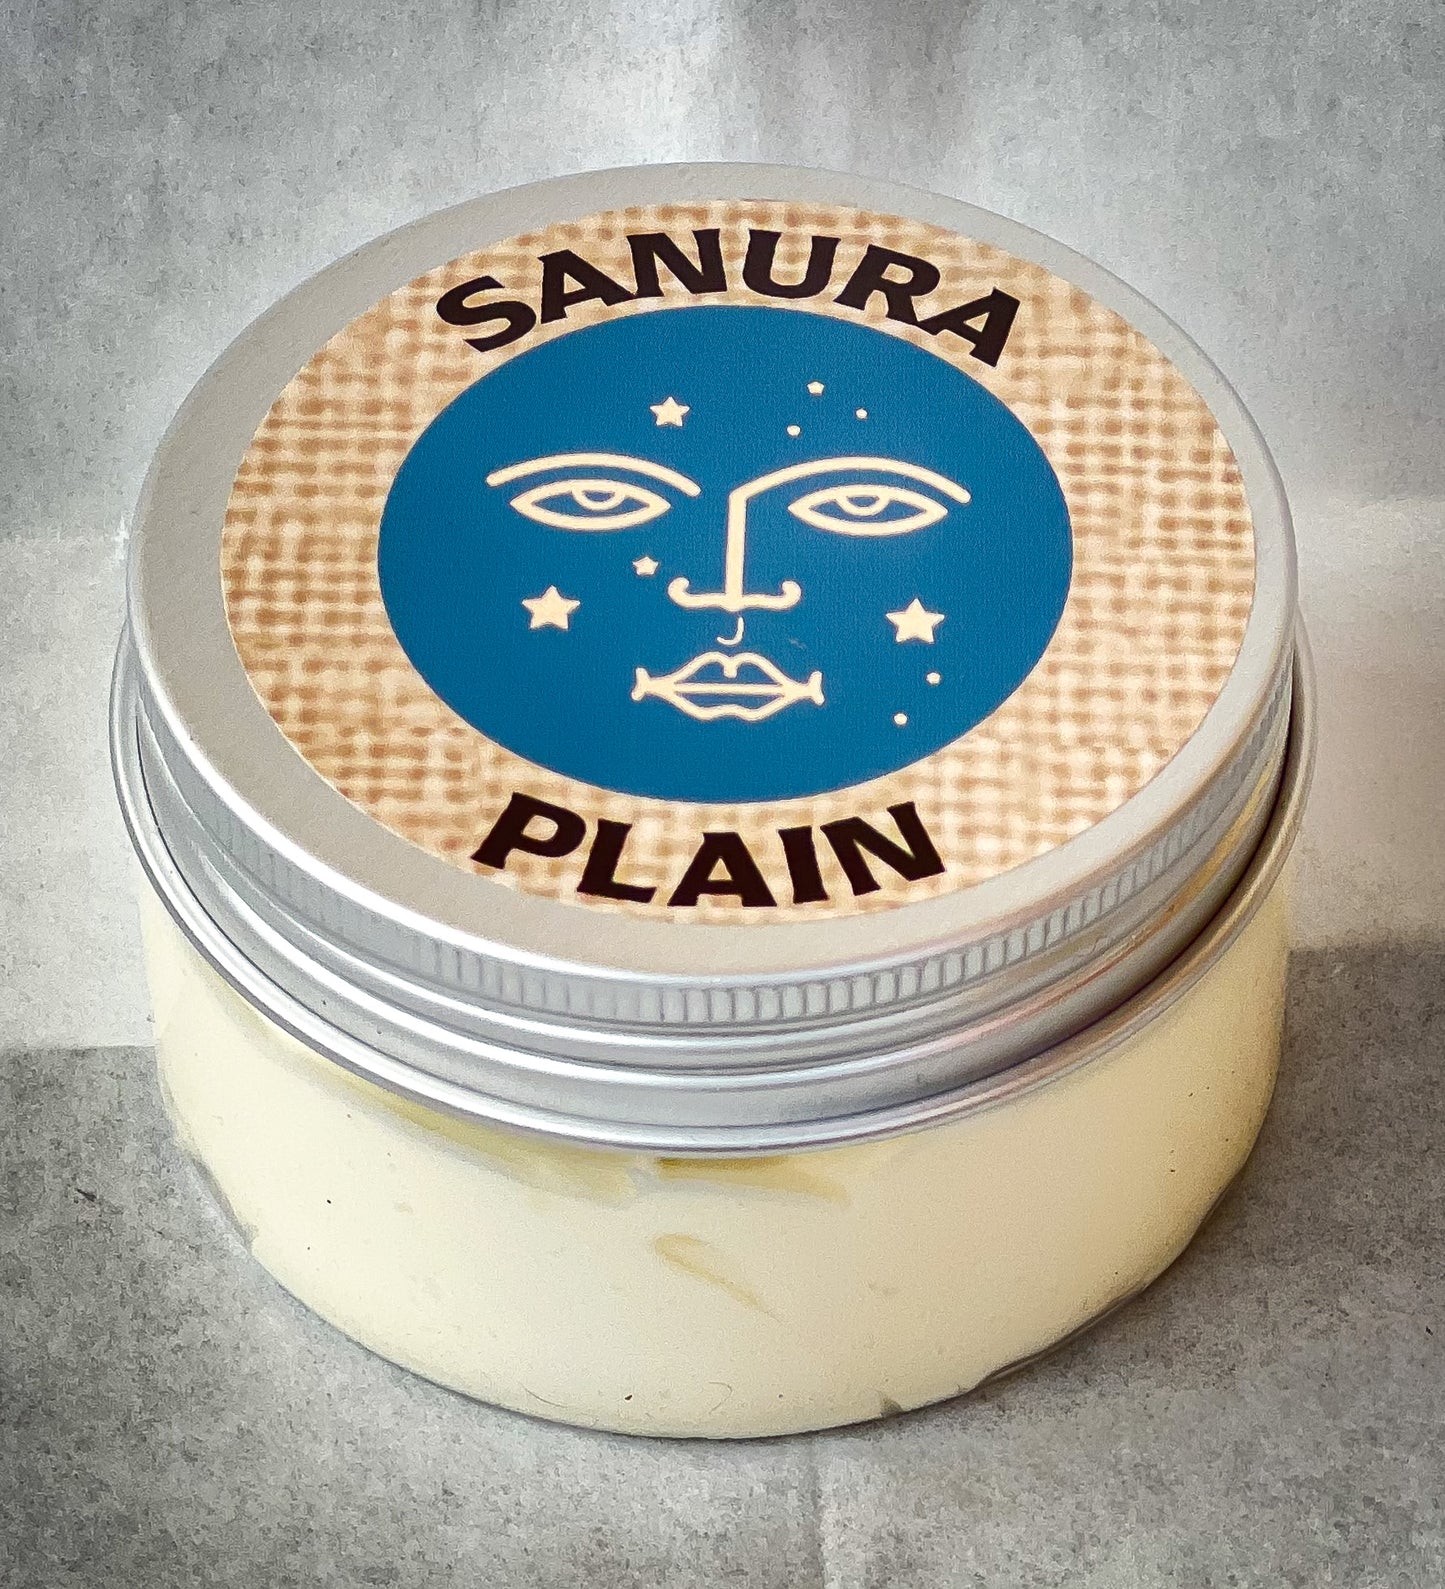 Sanura Plain Whipped Butter